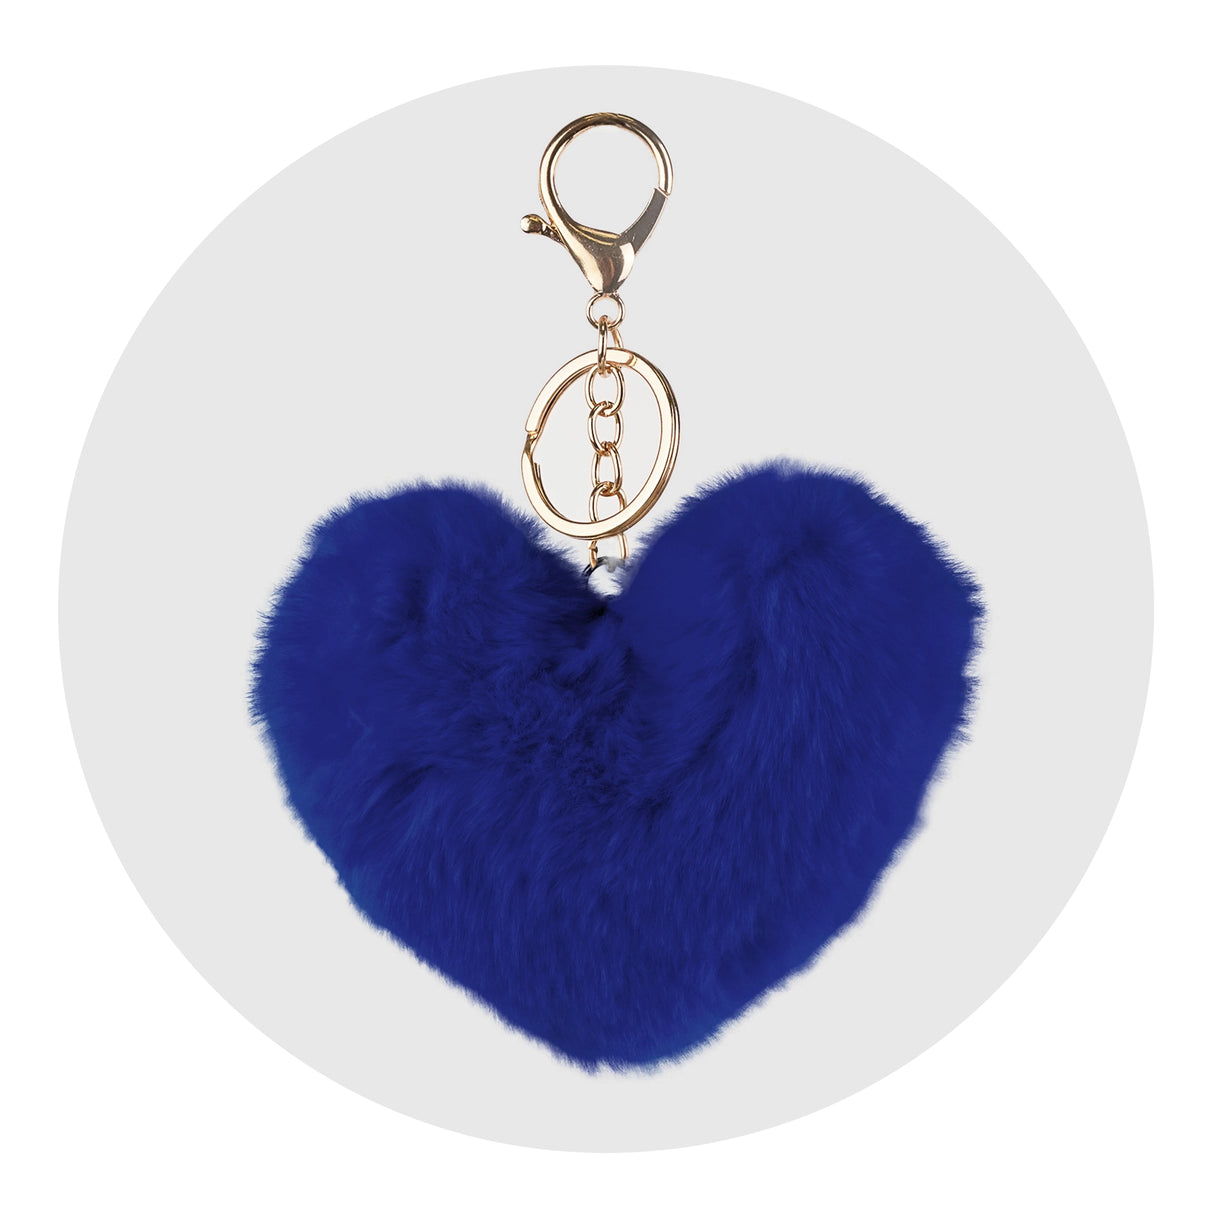 pom pom heart key chain blue